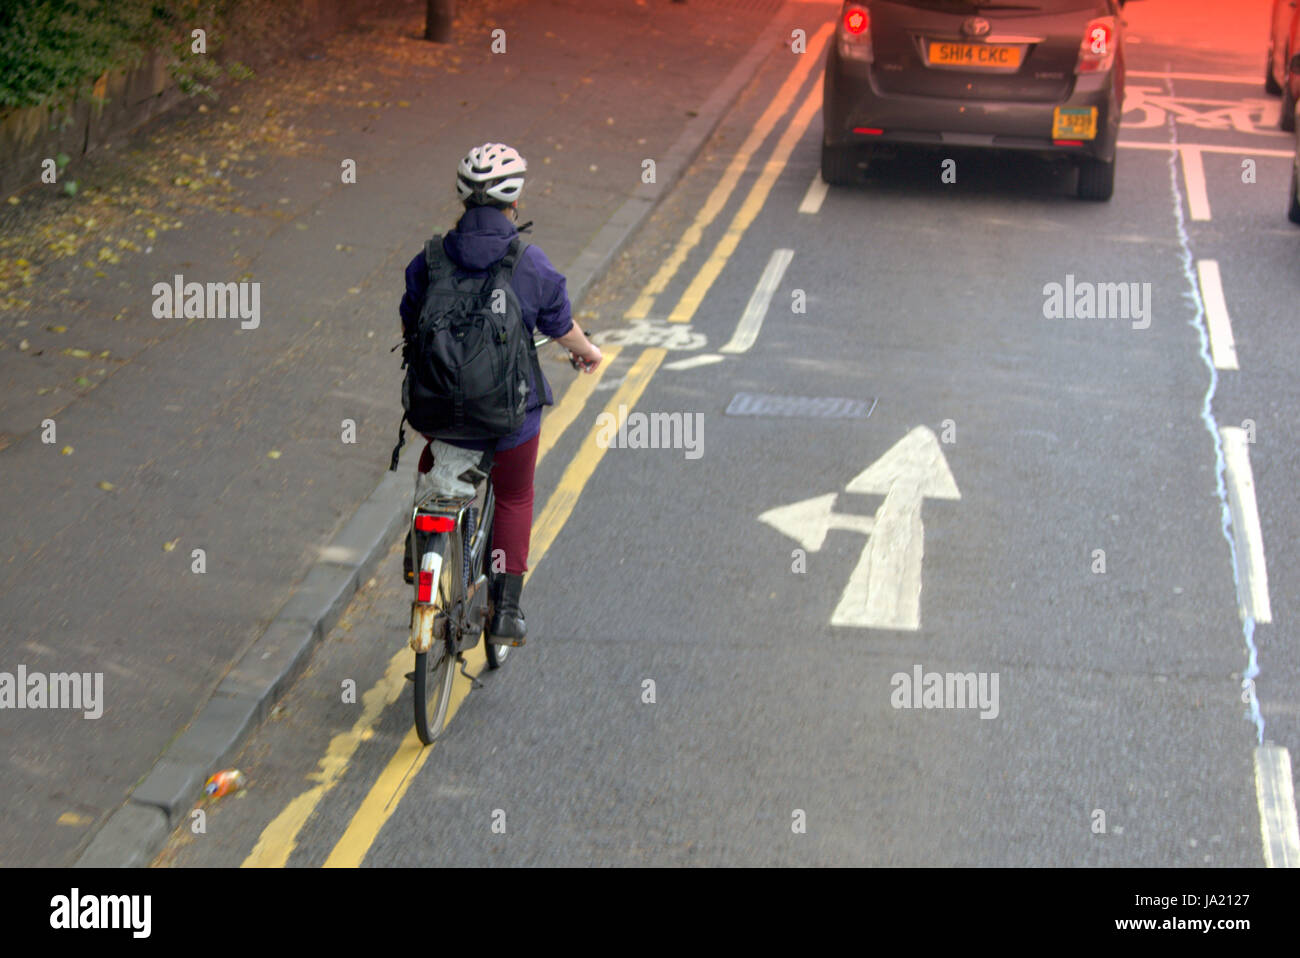 Junges Mädchen auf Fahrrad Radfahrer im Straßenverkehr stark befahrene Straße in der Nähe Fahrradweg und Gefahr Stockfoto